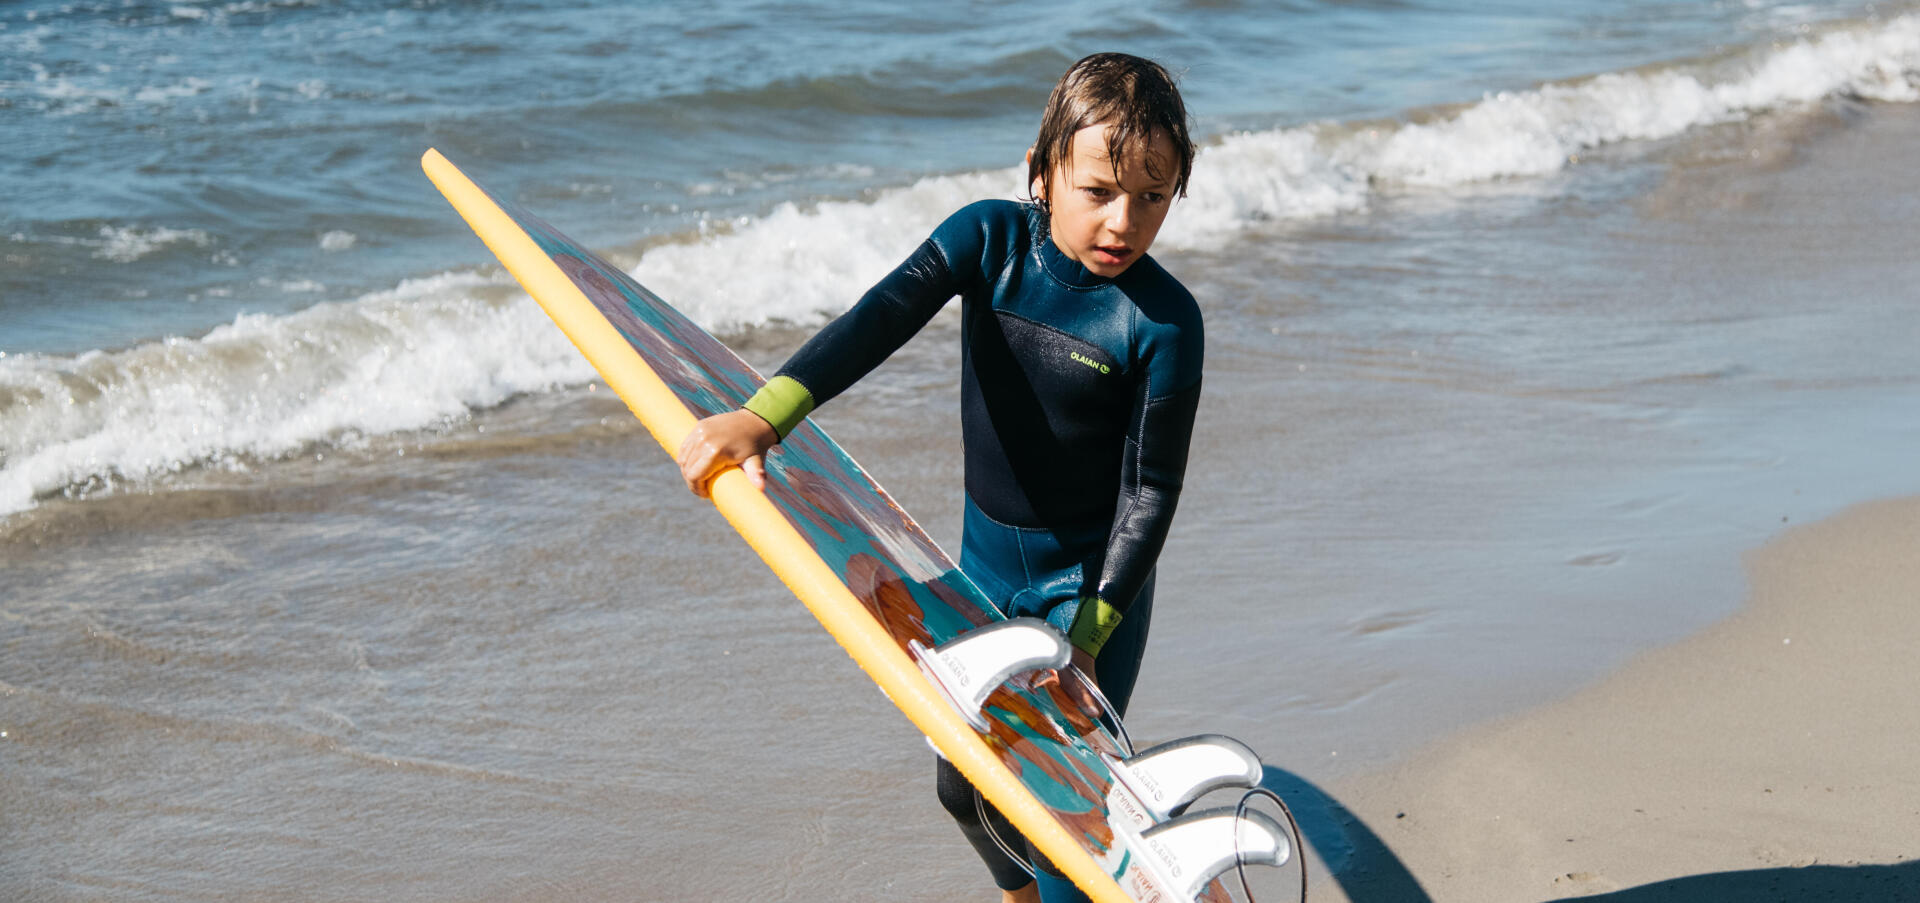 Uma viagem de surf em carrinha:destino Bretanha para toda a família